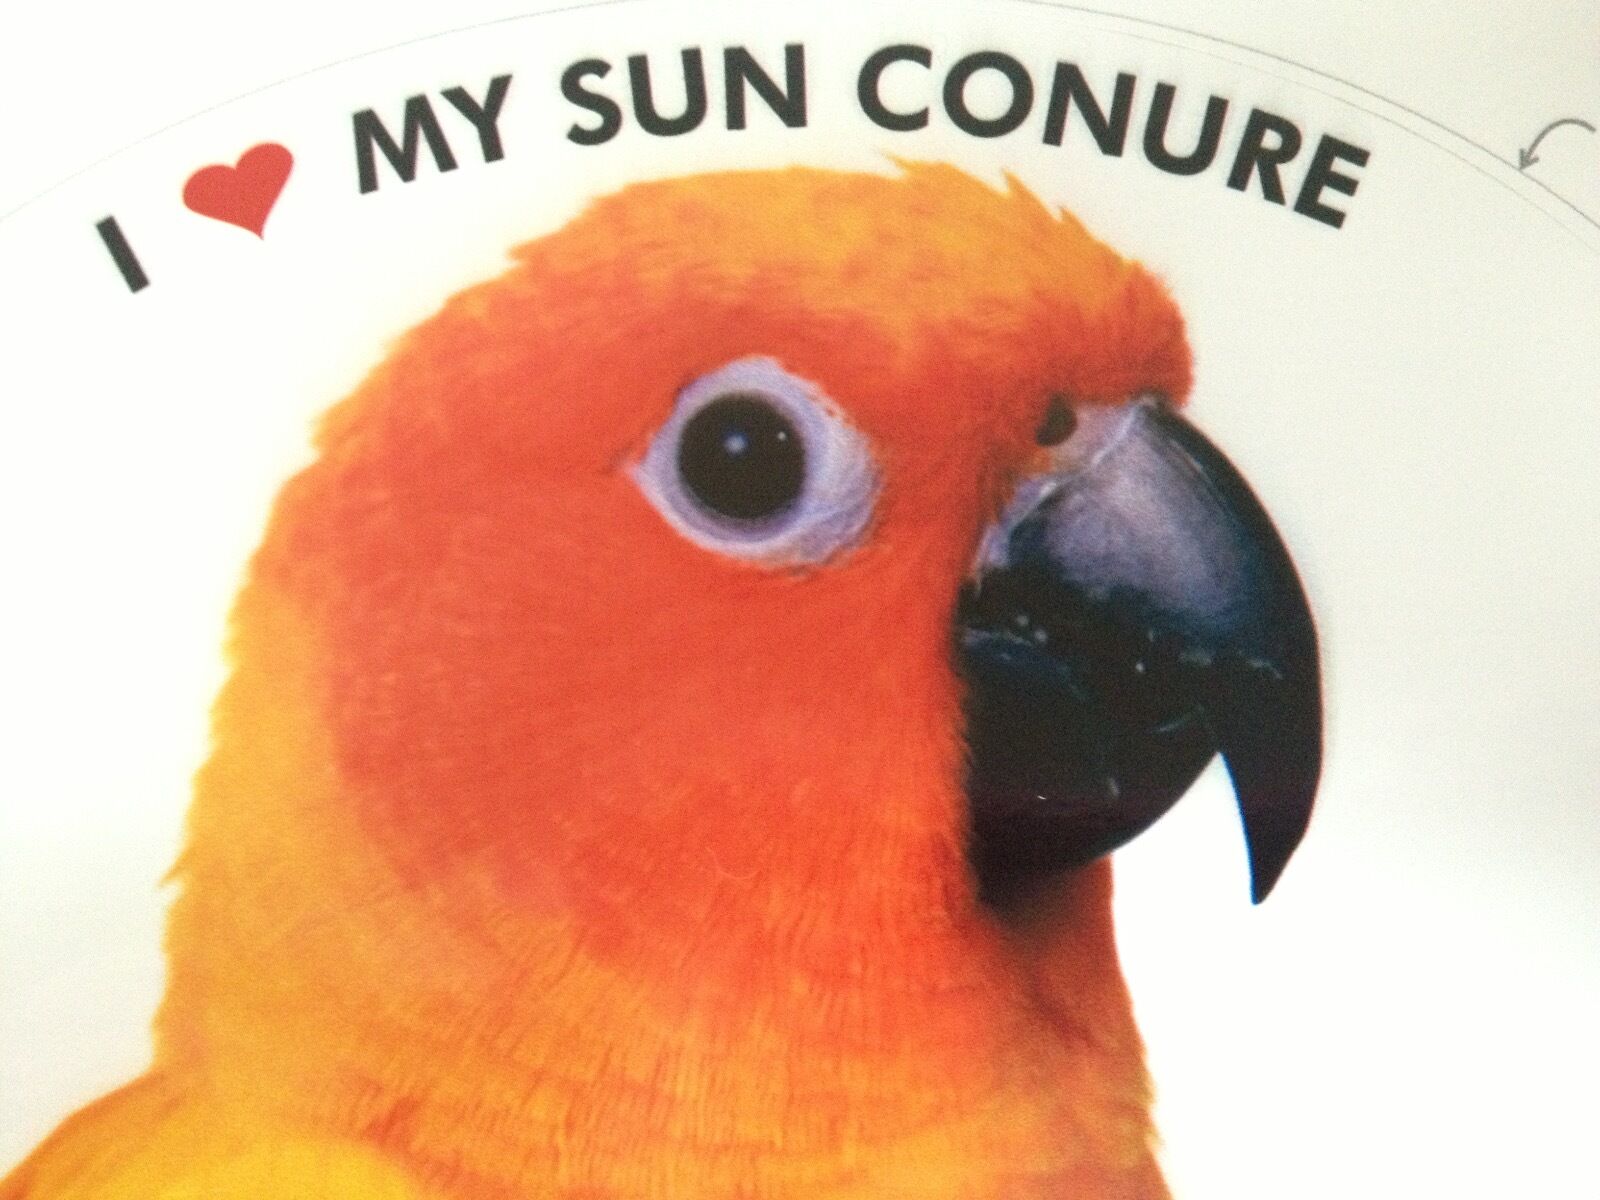 Sun Conure / Sun Parakeet Parrot Exotic Bird Vinyl Decal Bumper Sticker